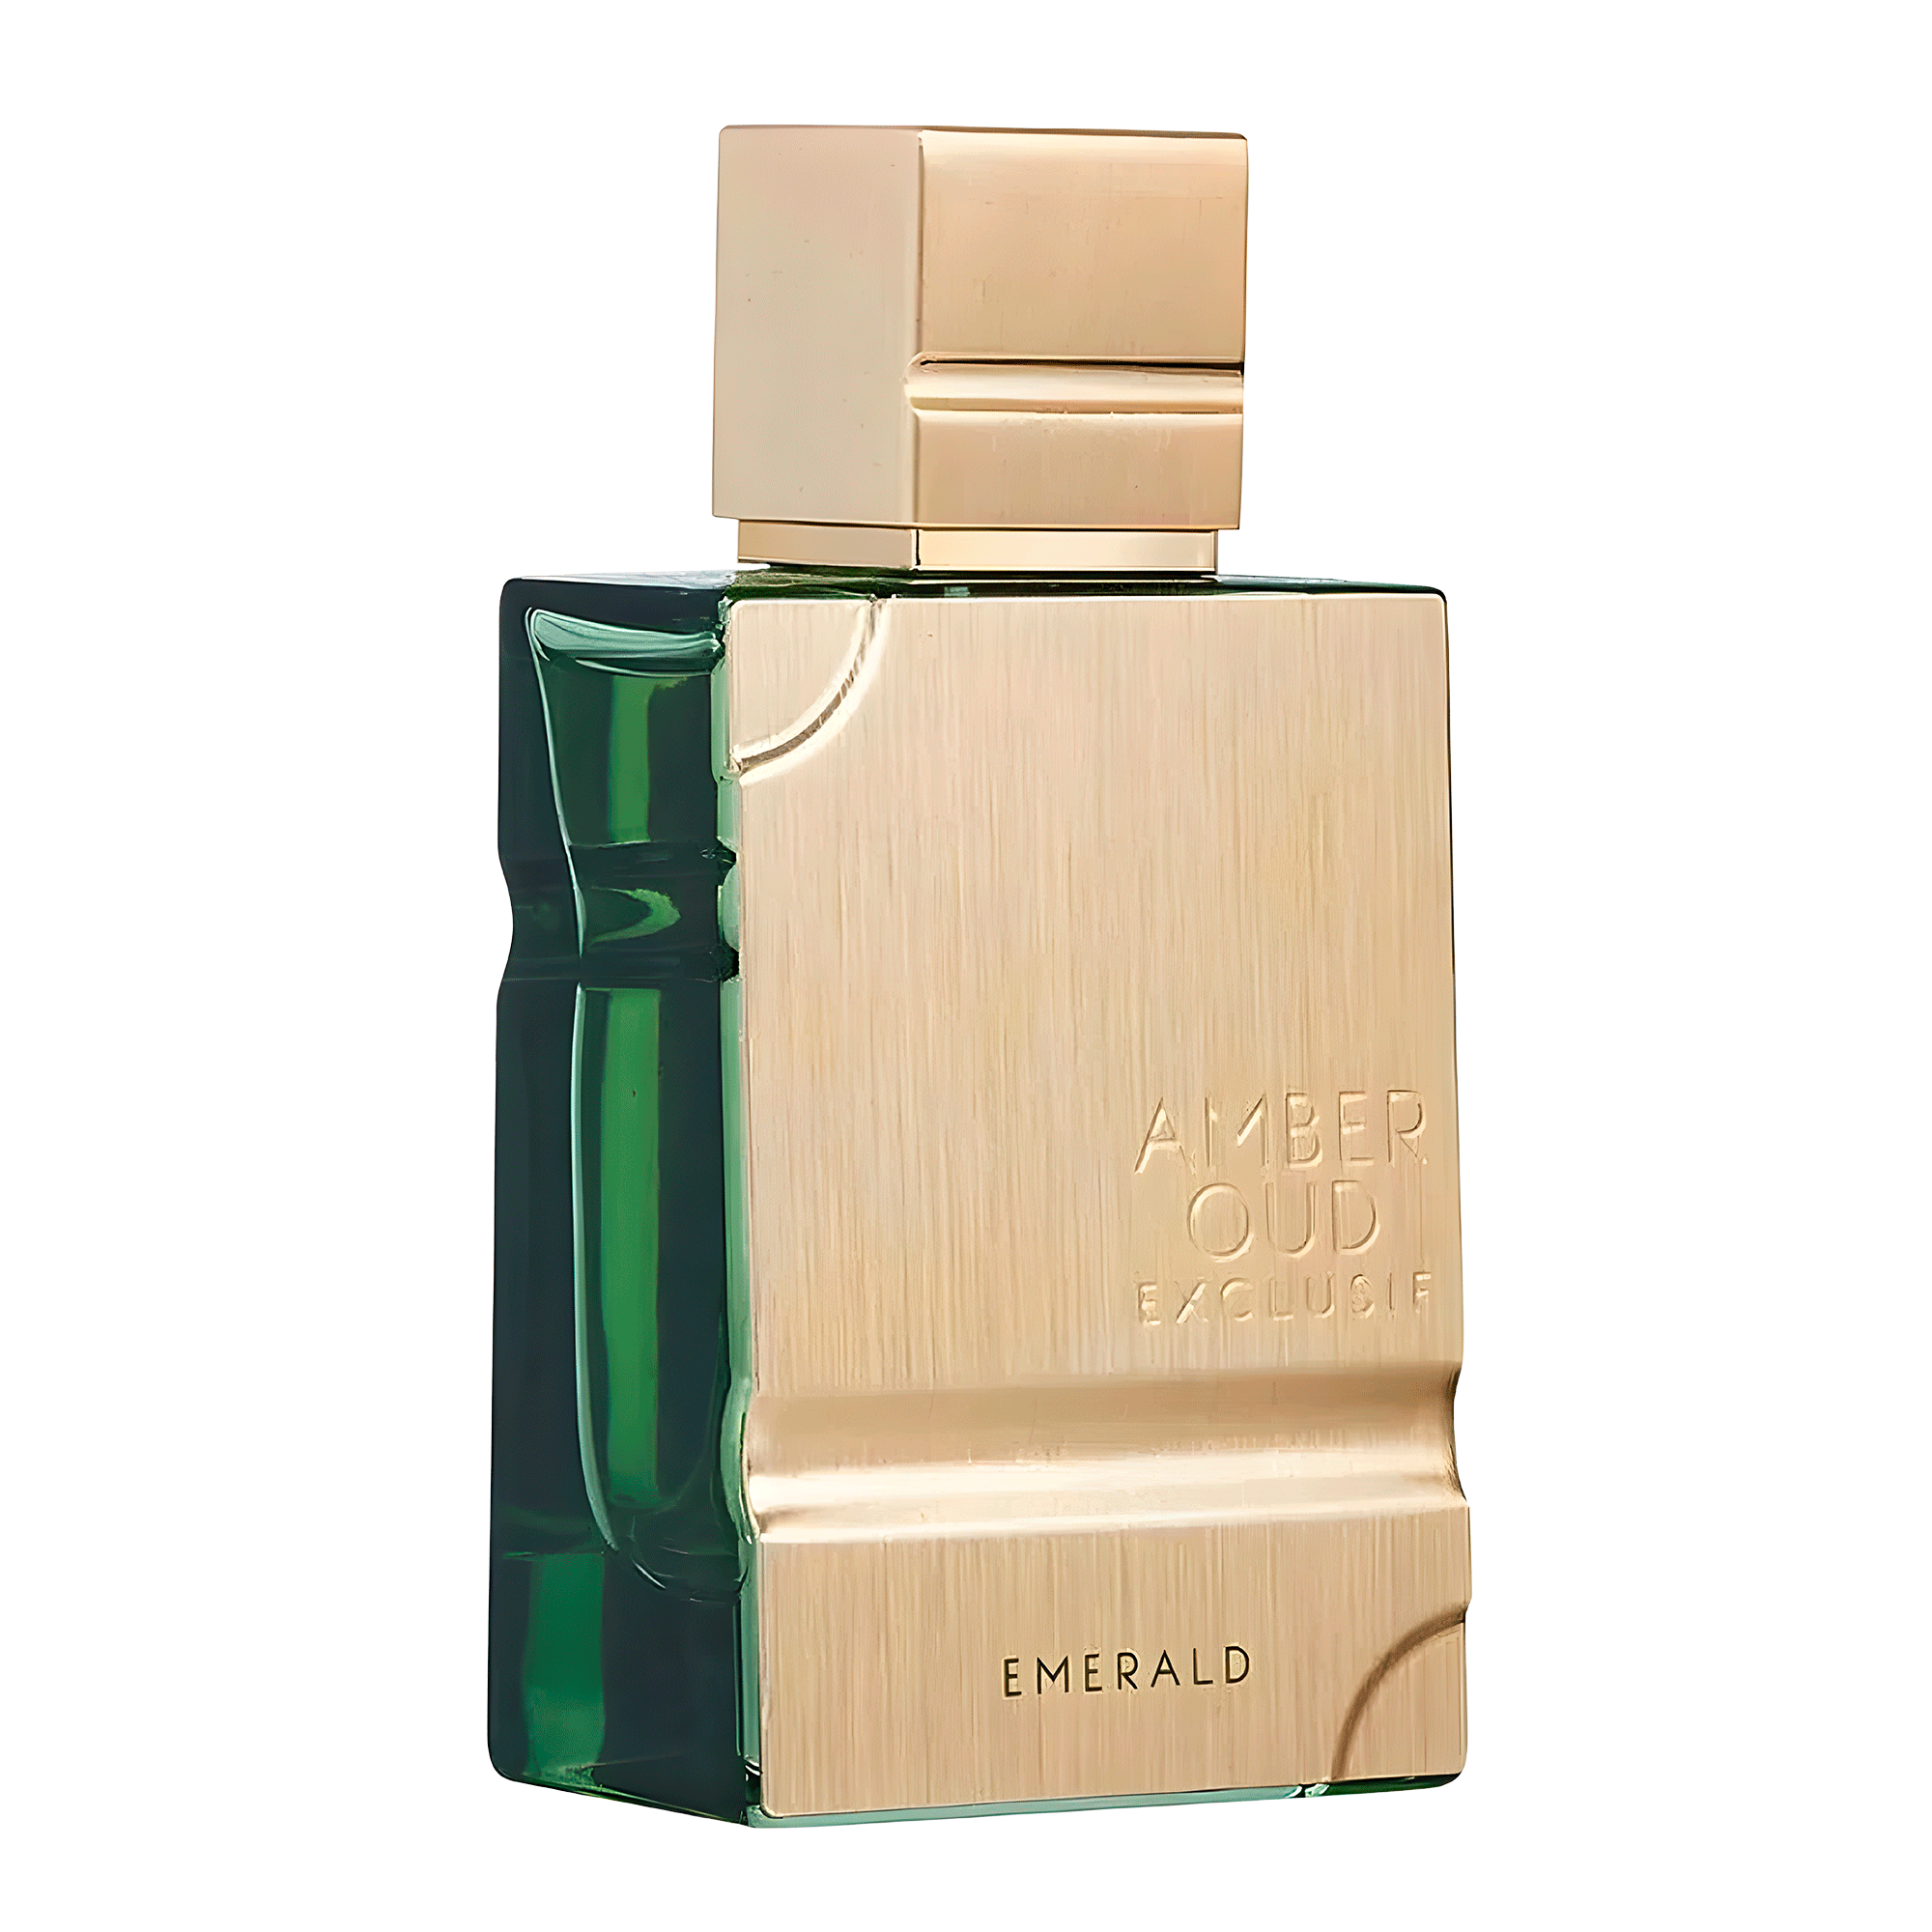 Al Haramain Amber Oud Exclusif Esmerald Extrait De Parfum Perfume Unissex 60ml